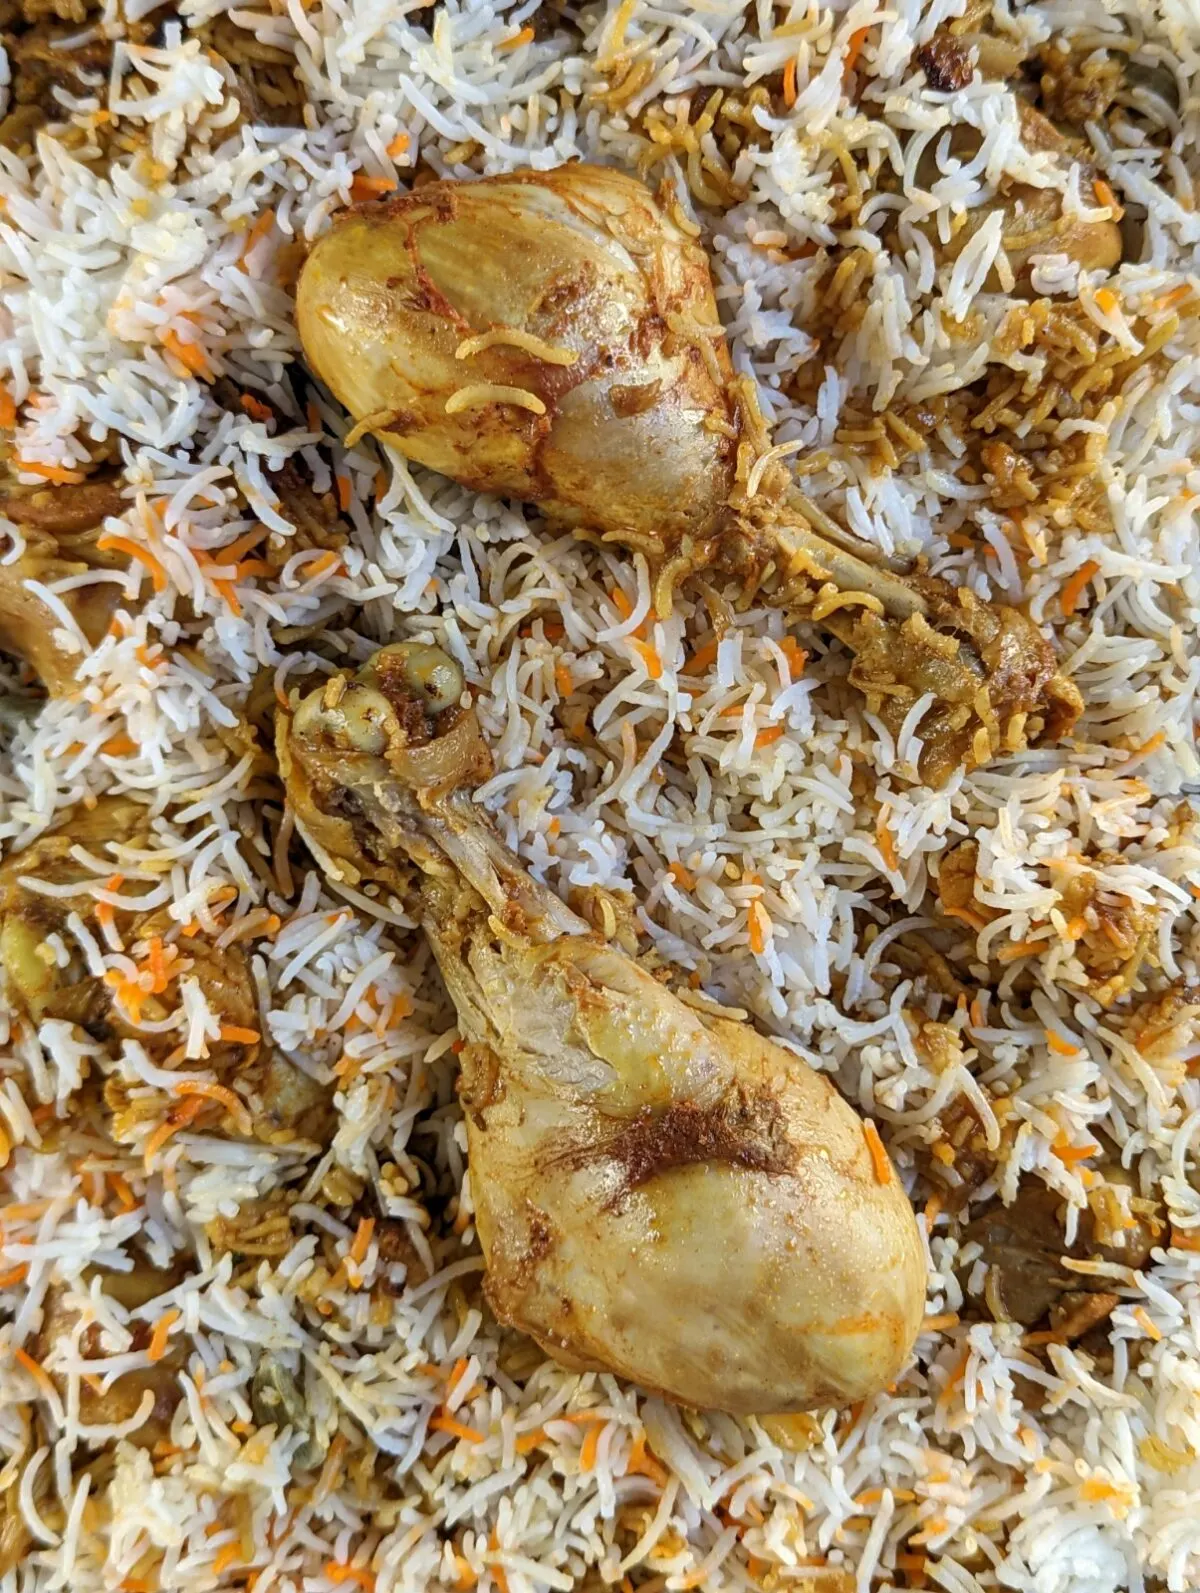 Chicken biryani in a serving dish.